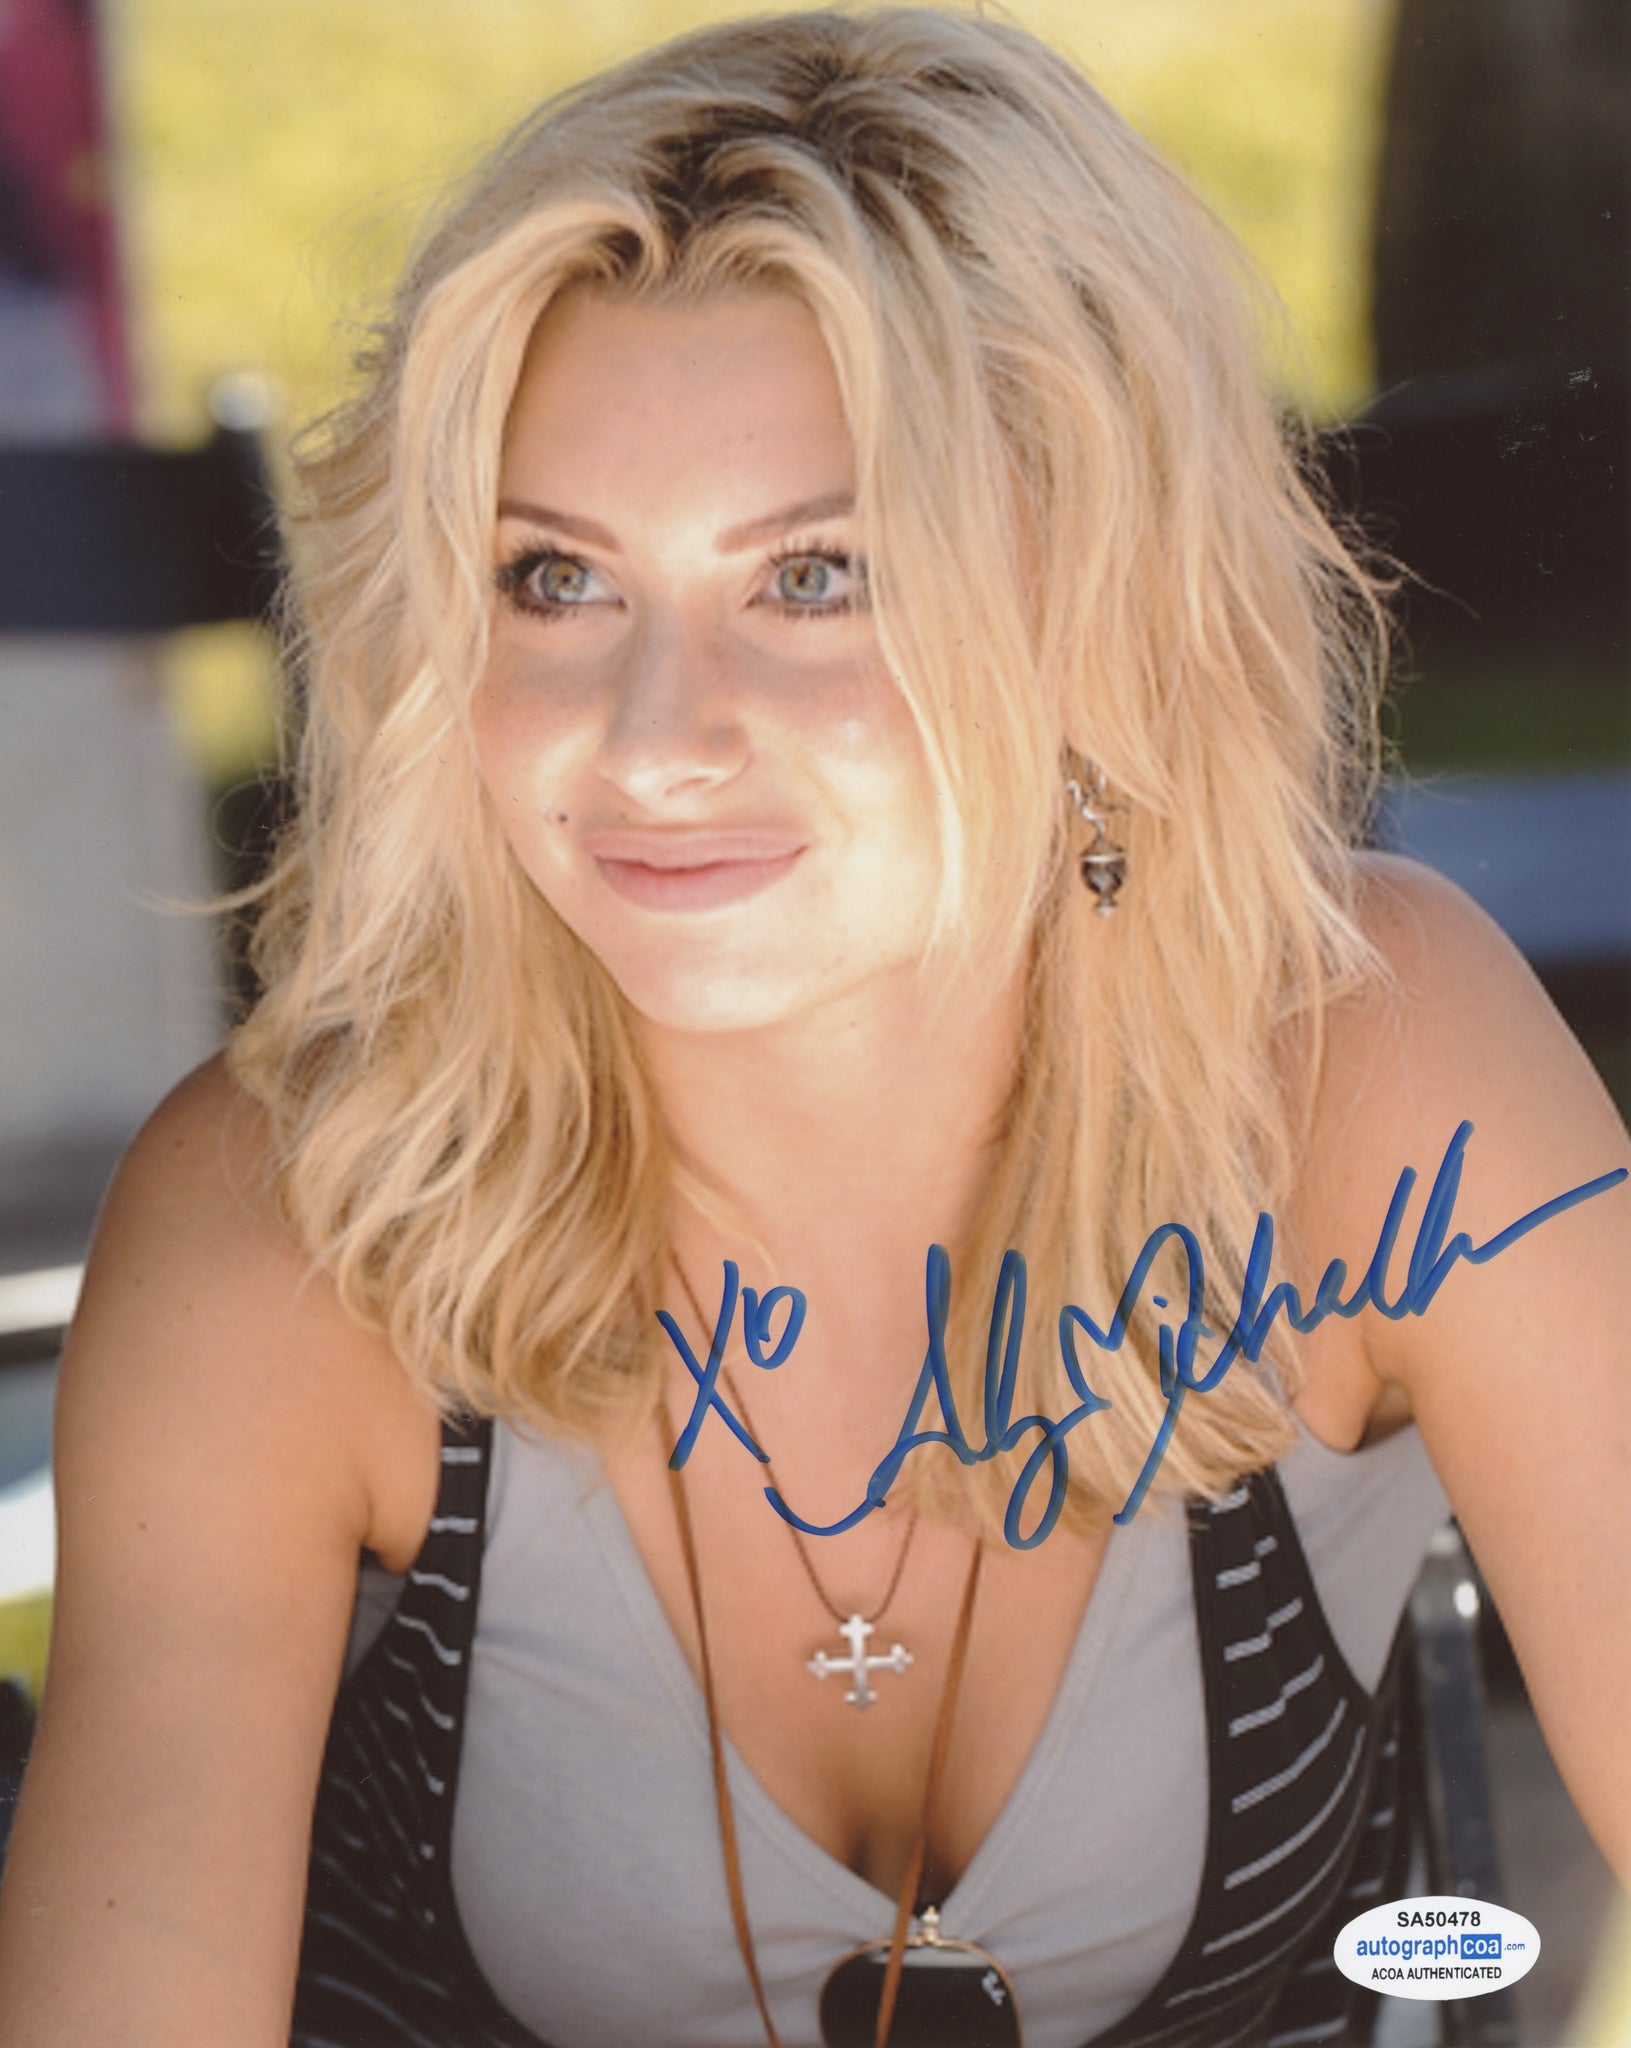 Aly Michalka Sexy Signed Autograph 8x10 Photo ACOA